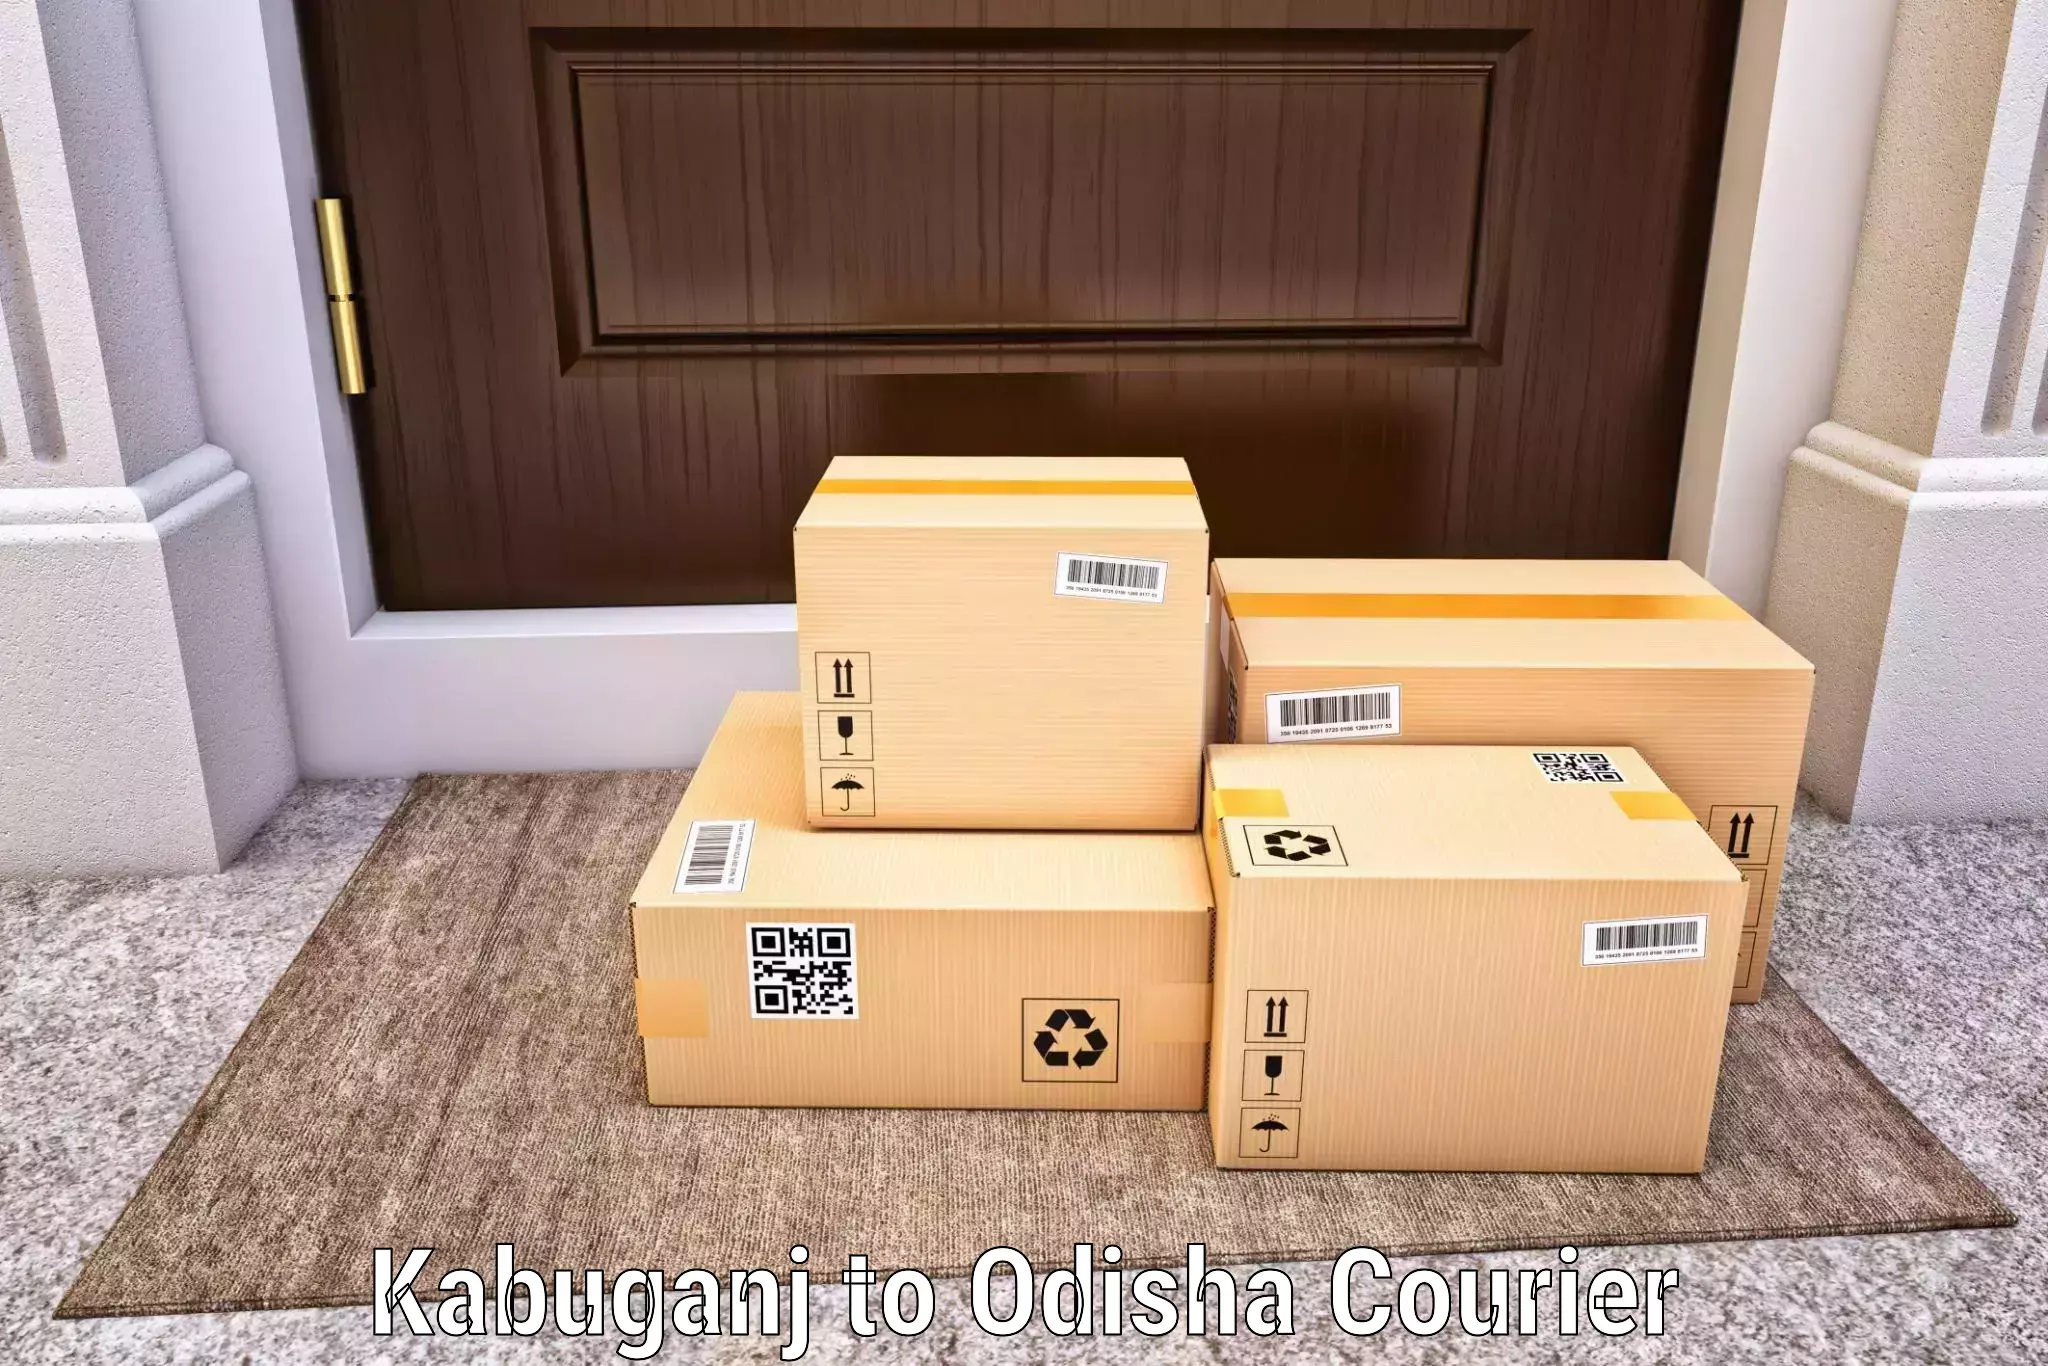 Overnight delivery Kabuganj to Balasore